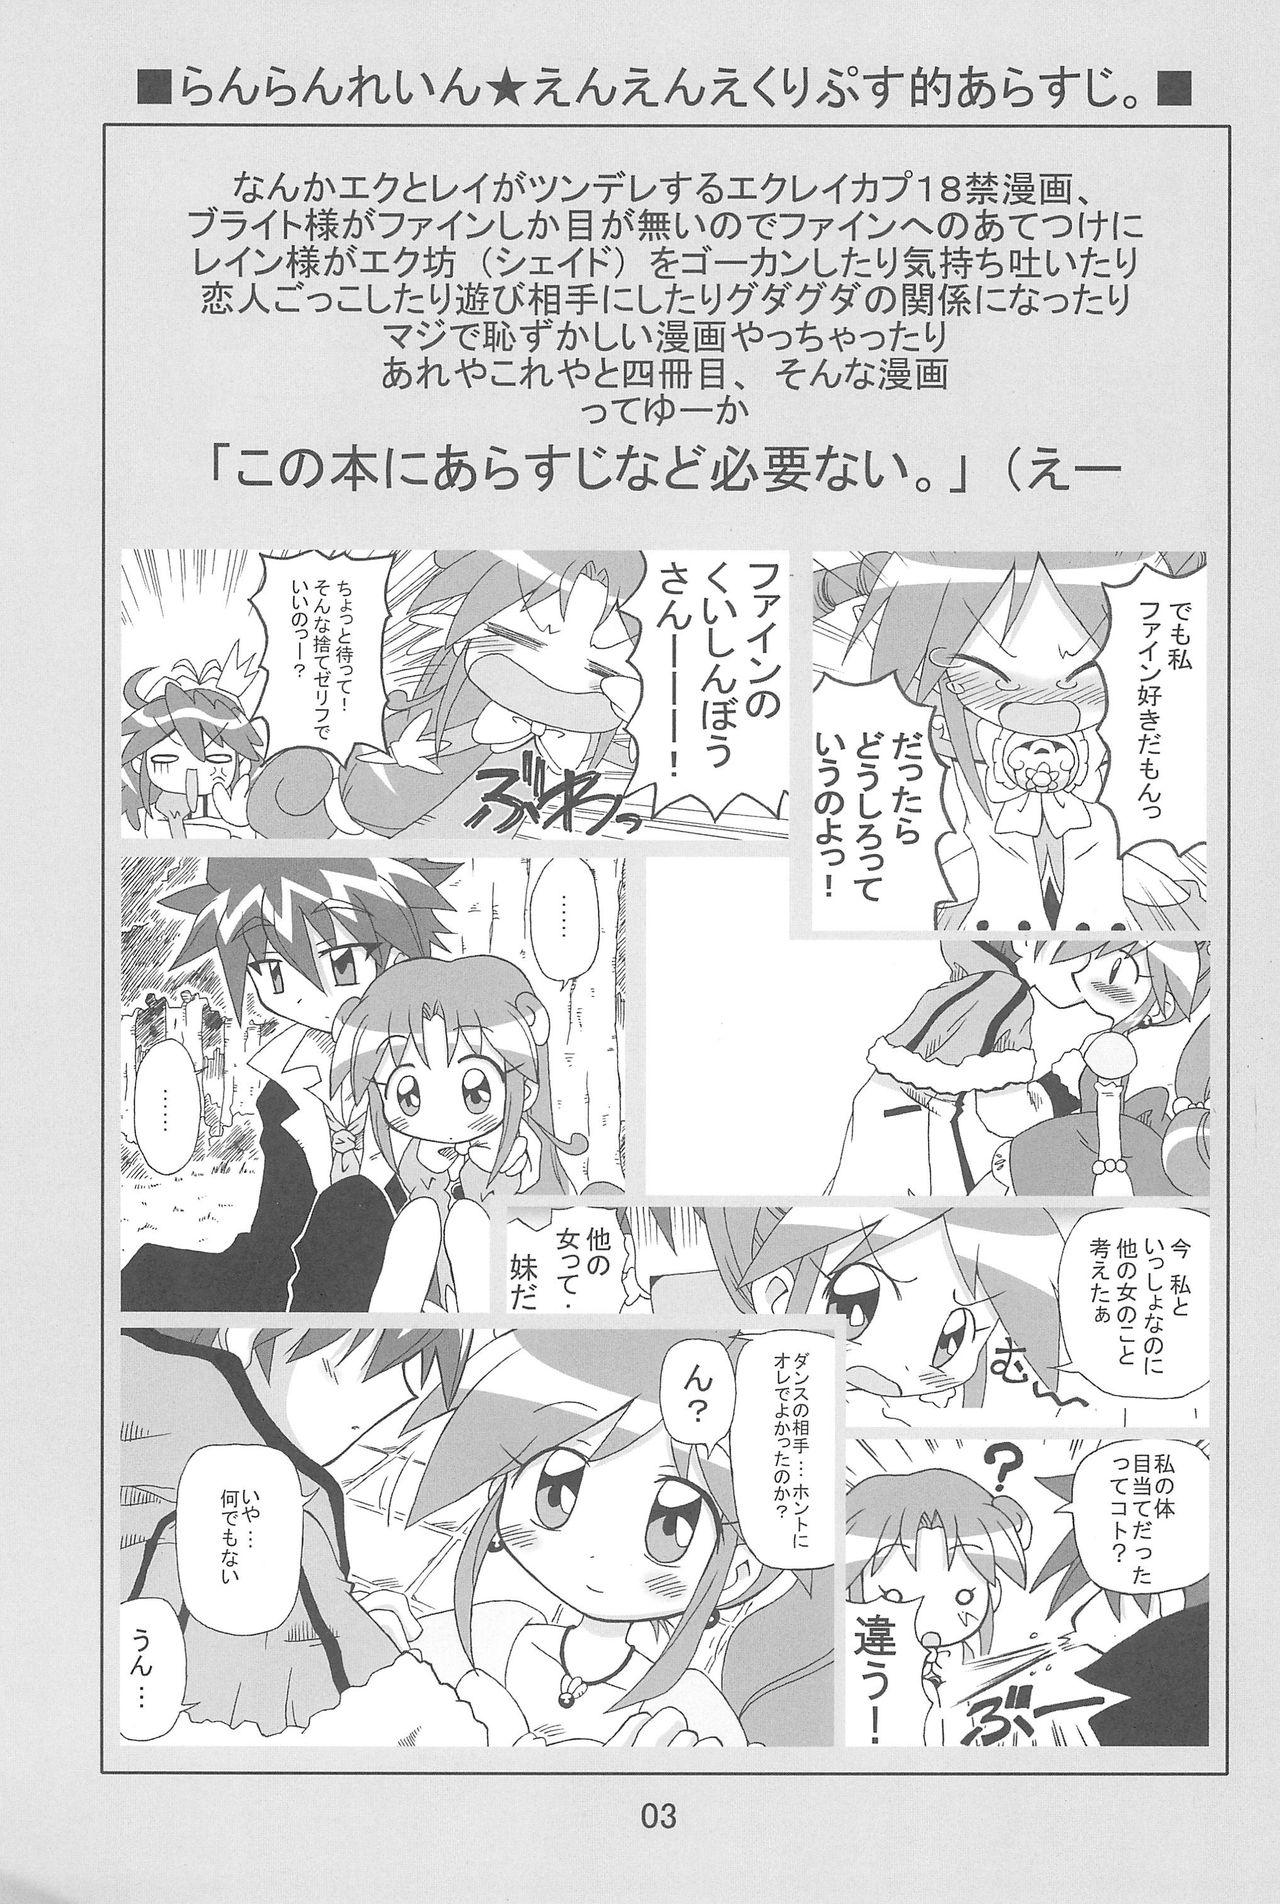 Cheerleader Strawberry x Strawberry - Fushigiboshi no futagohime Brunettes - Page 3